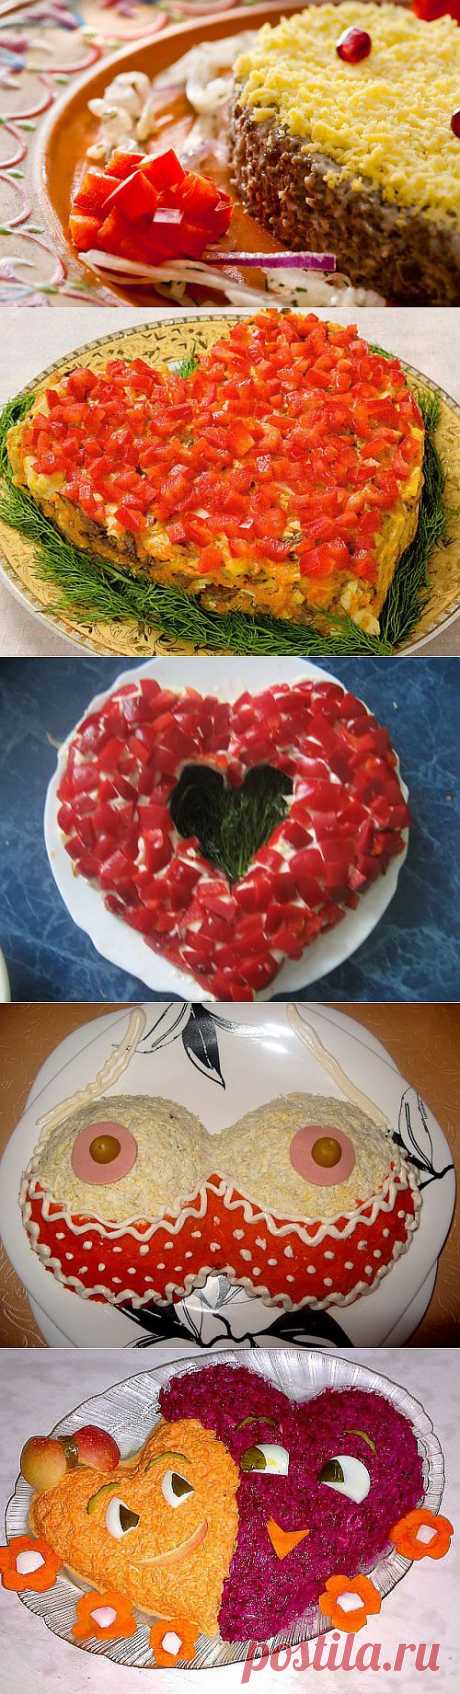 5 самых романтичных салатов на 14 февраля / Простые рецепты